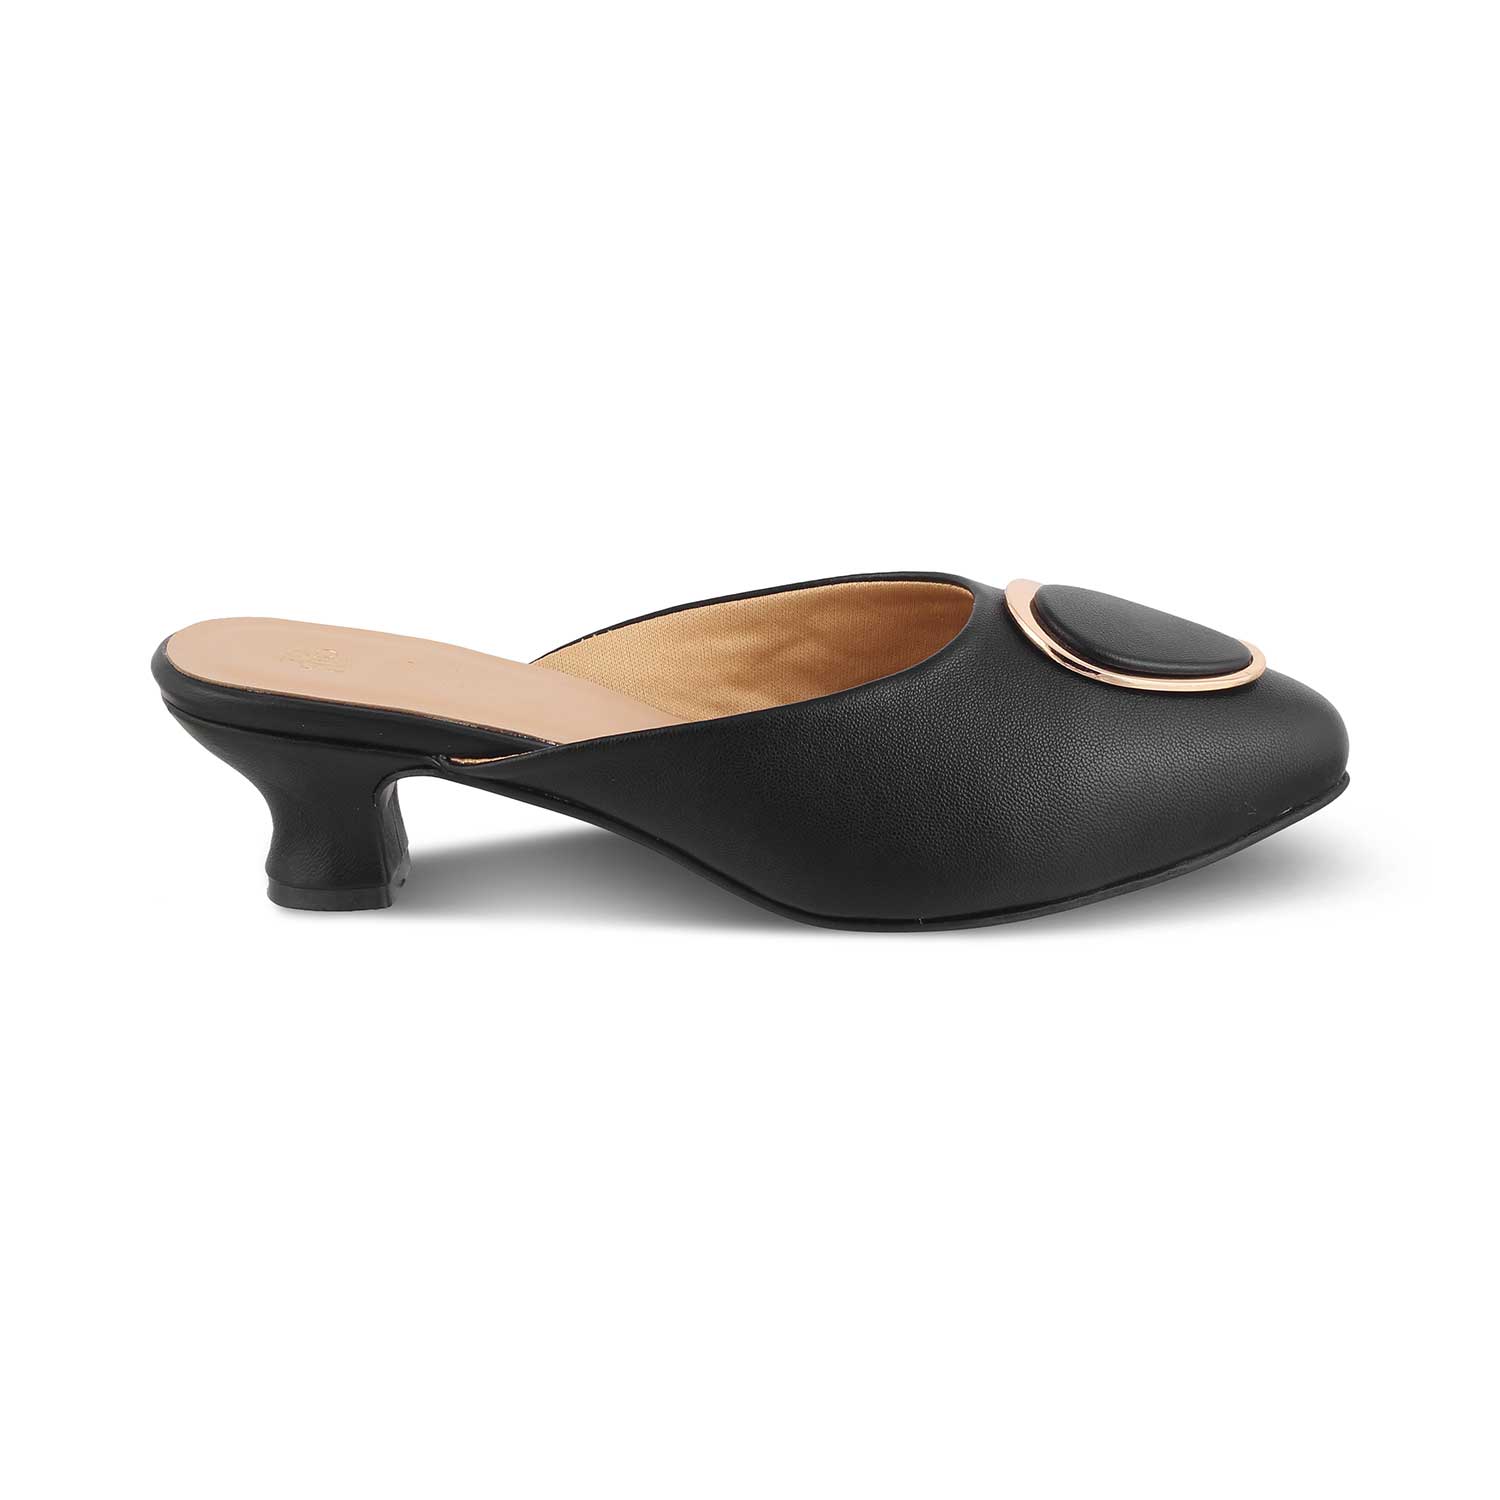 Buy Black Women's Sandals The Jelew Black Tresmode